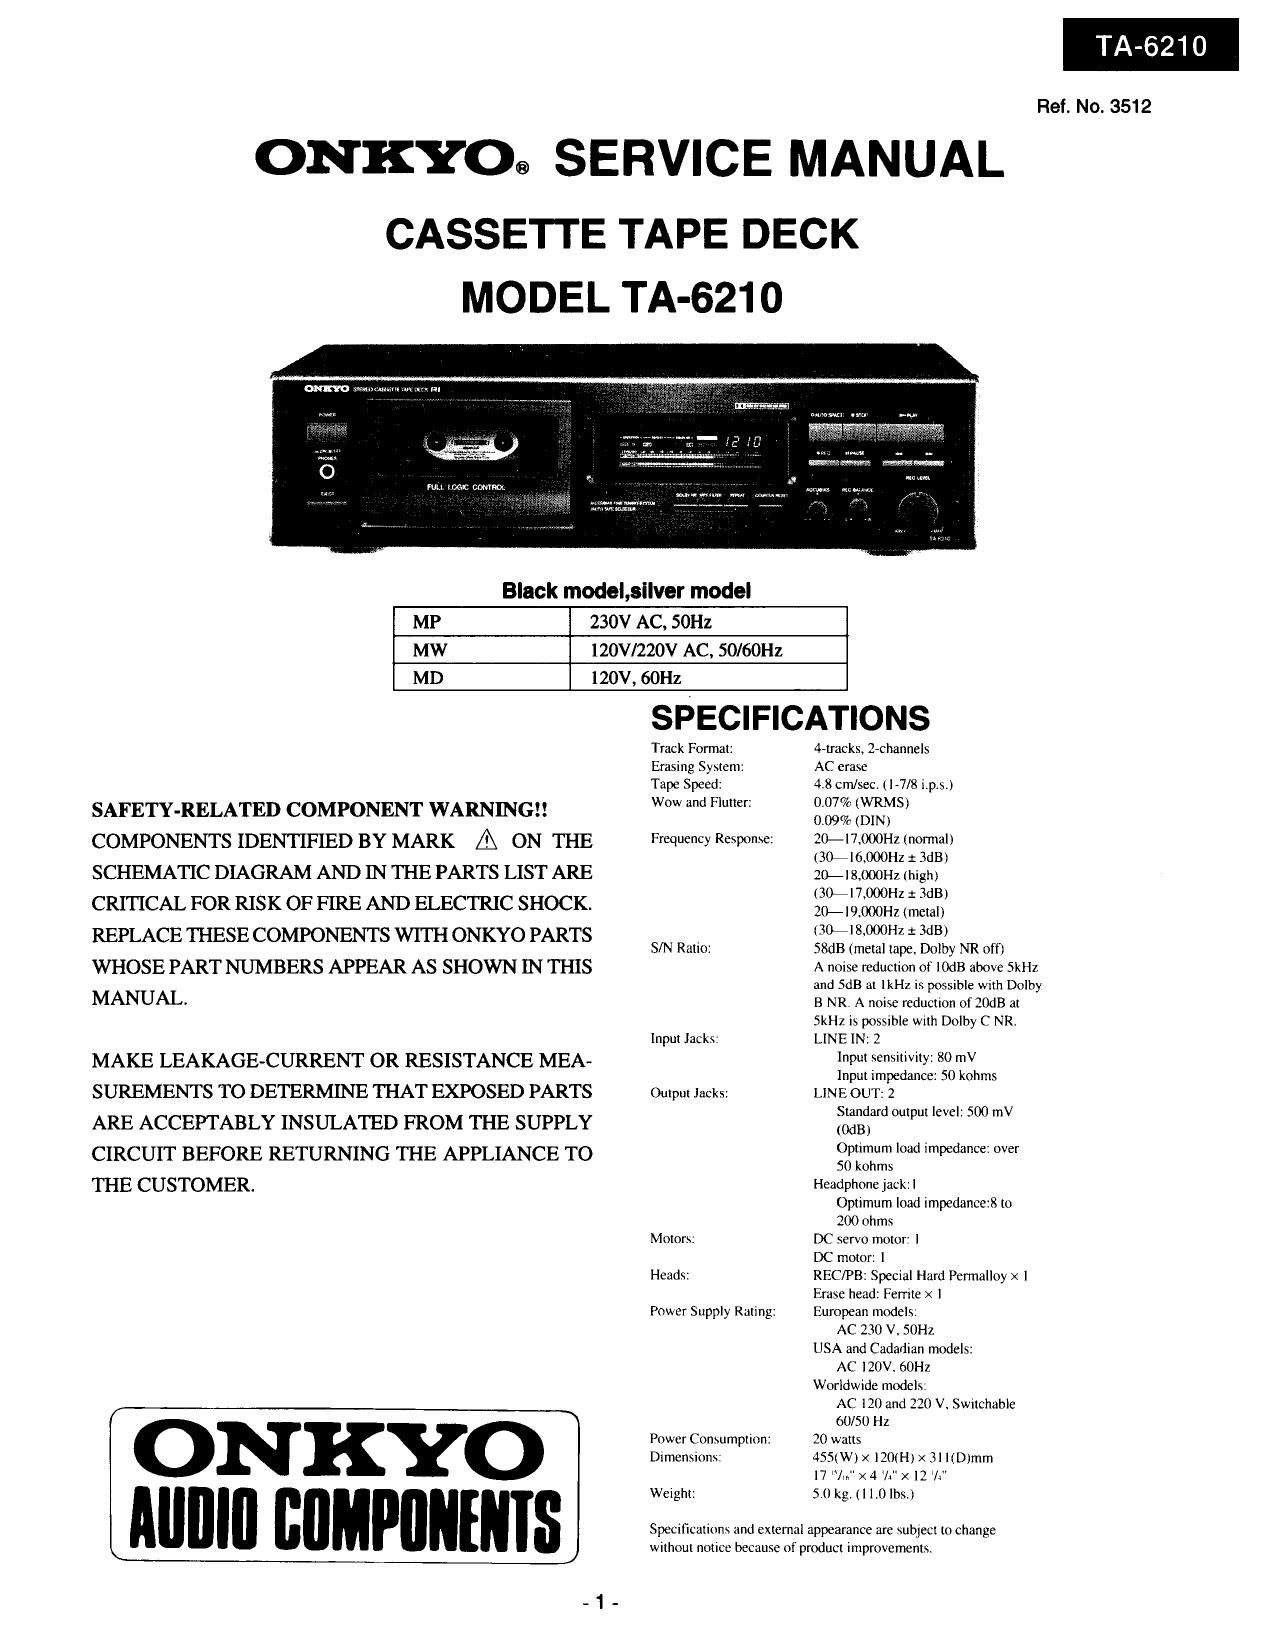 Onkyo TA 6210 Service Manual